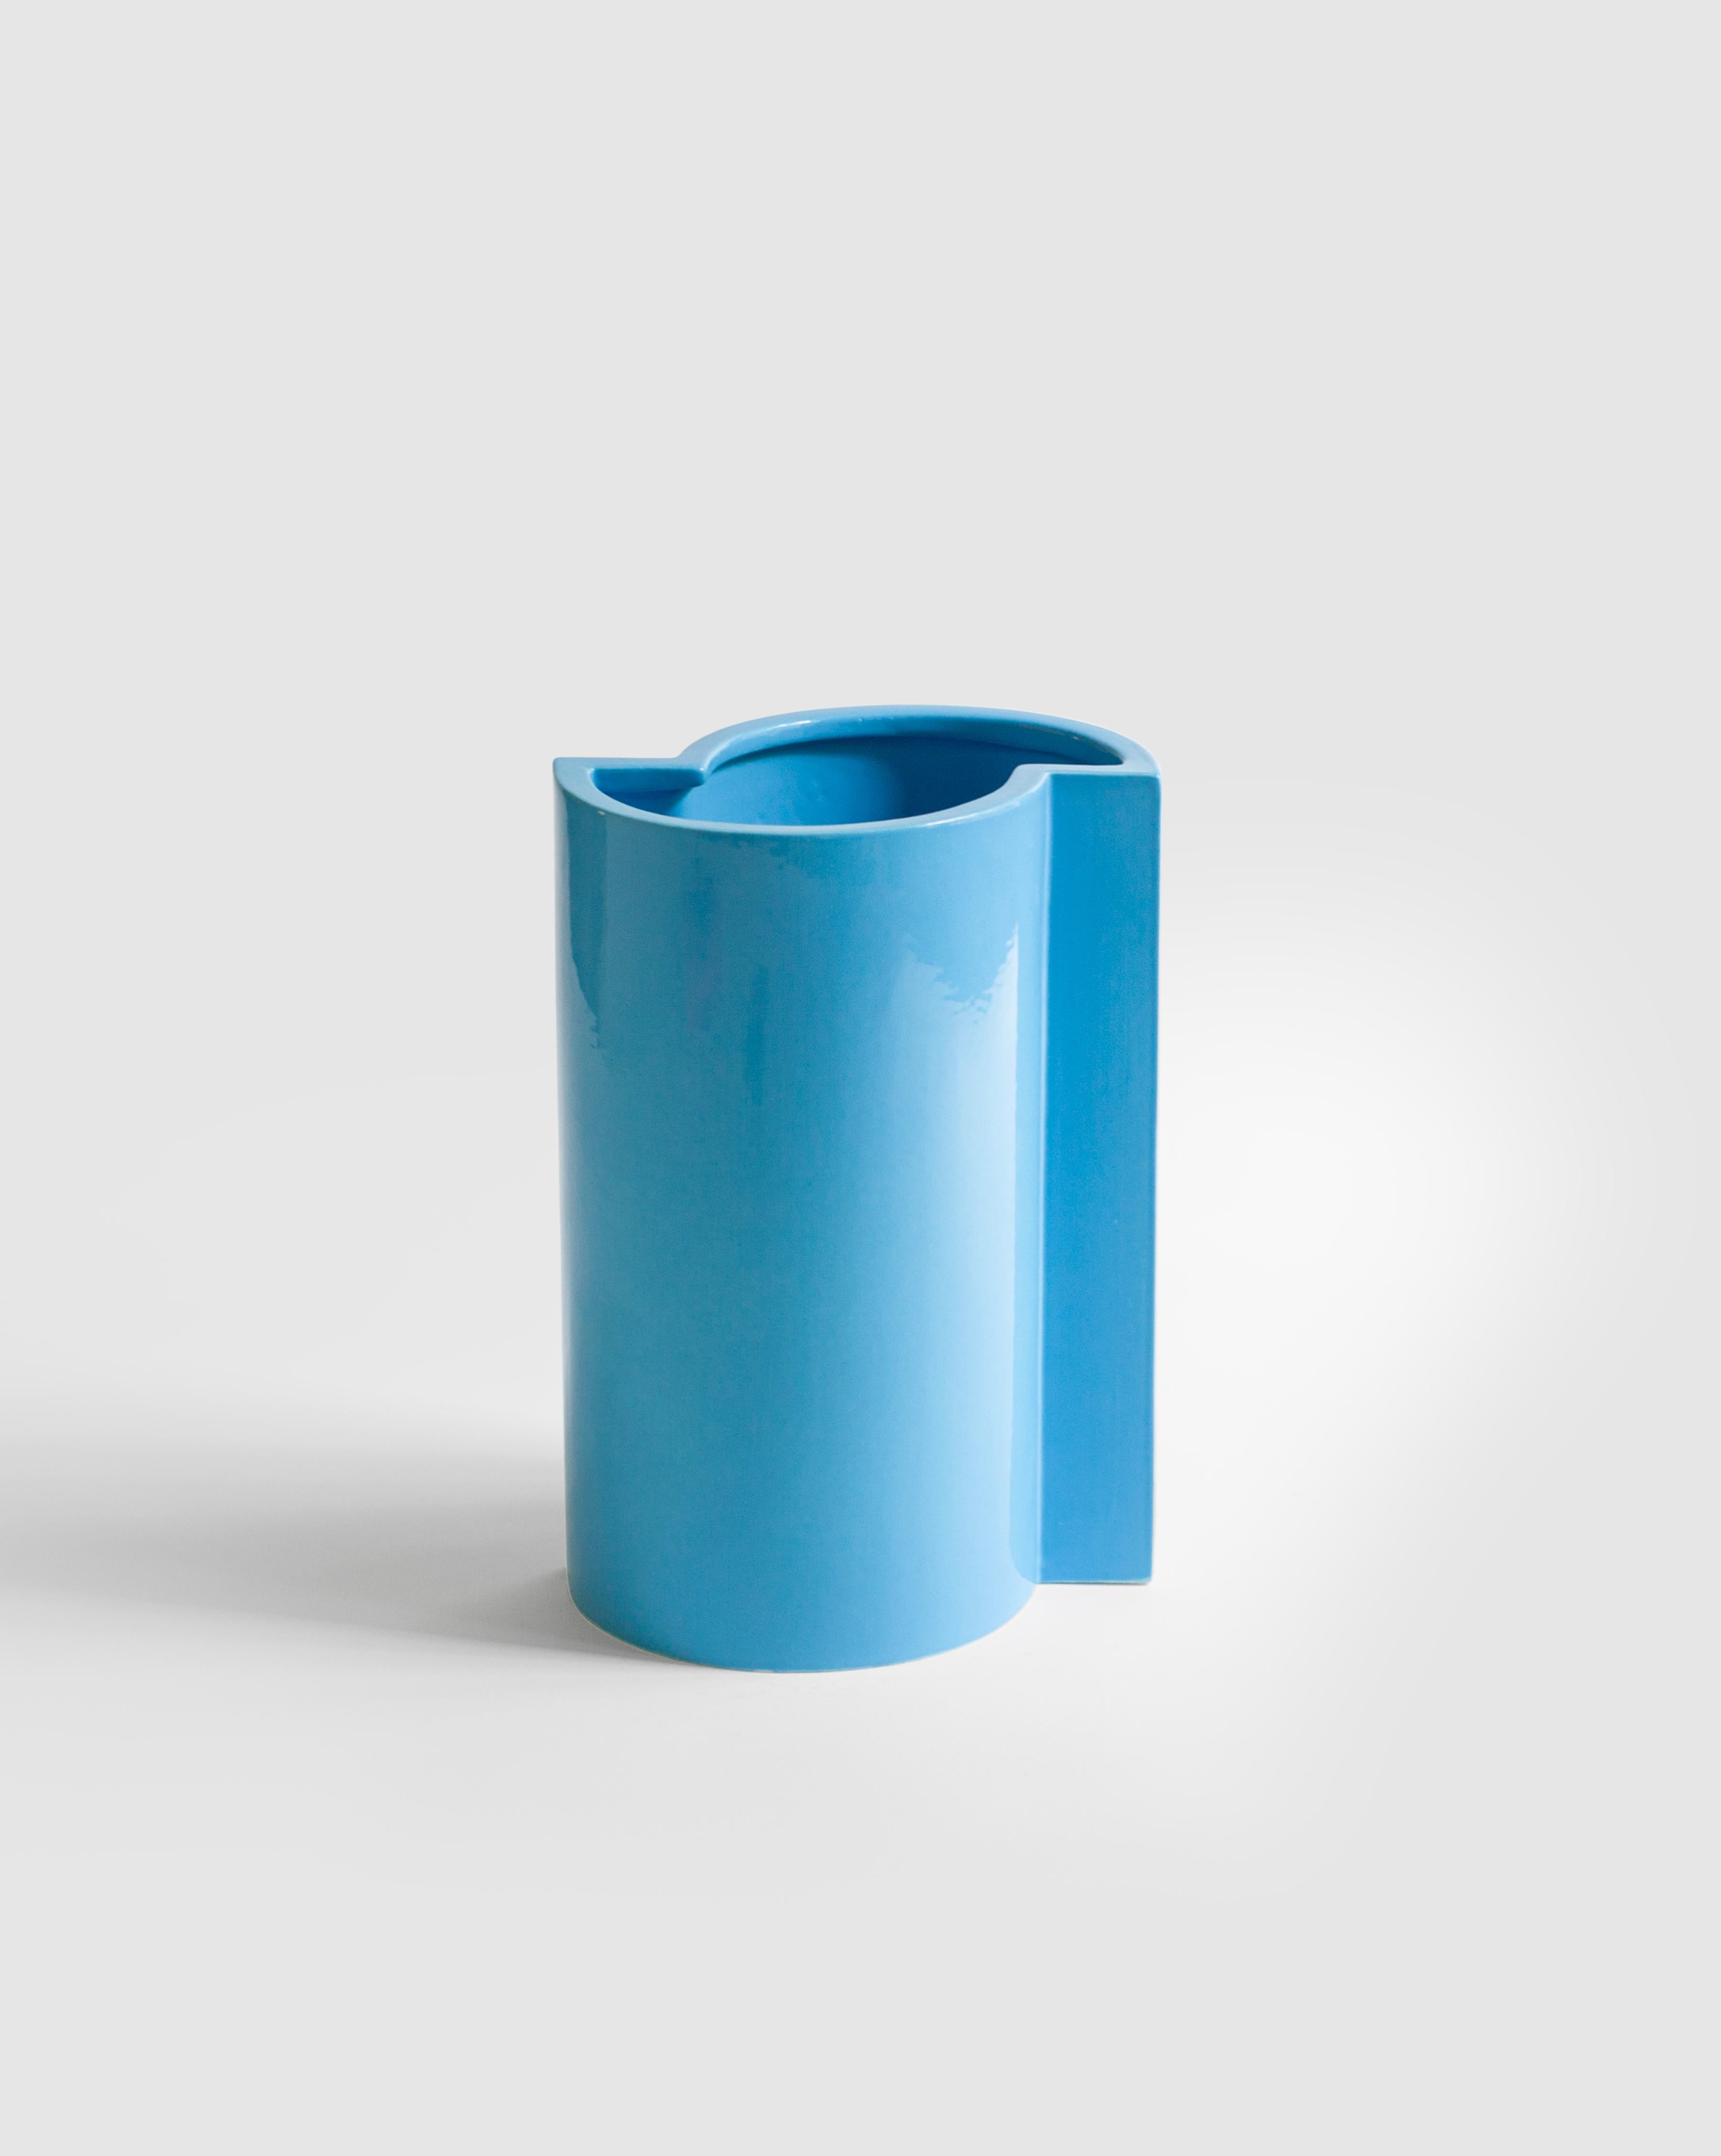 Un vase minimaliste et ludique en céramique coulée à la barbotine avec une glaçure bleu turquoise, cette pièce est fabriquée à la main à Milan.
Faisant partie de la collection 